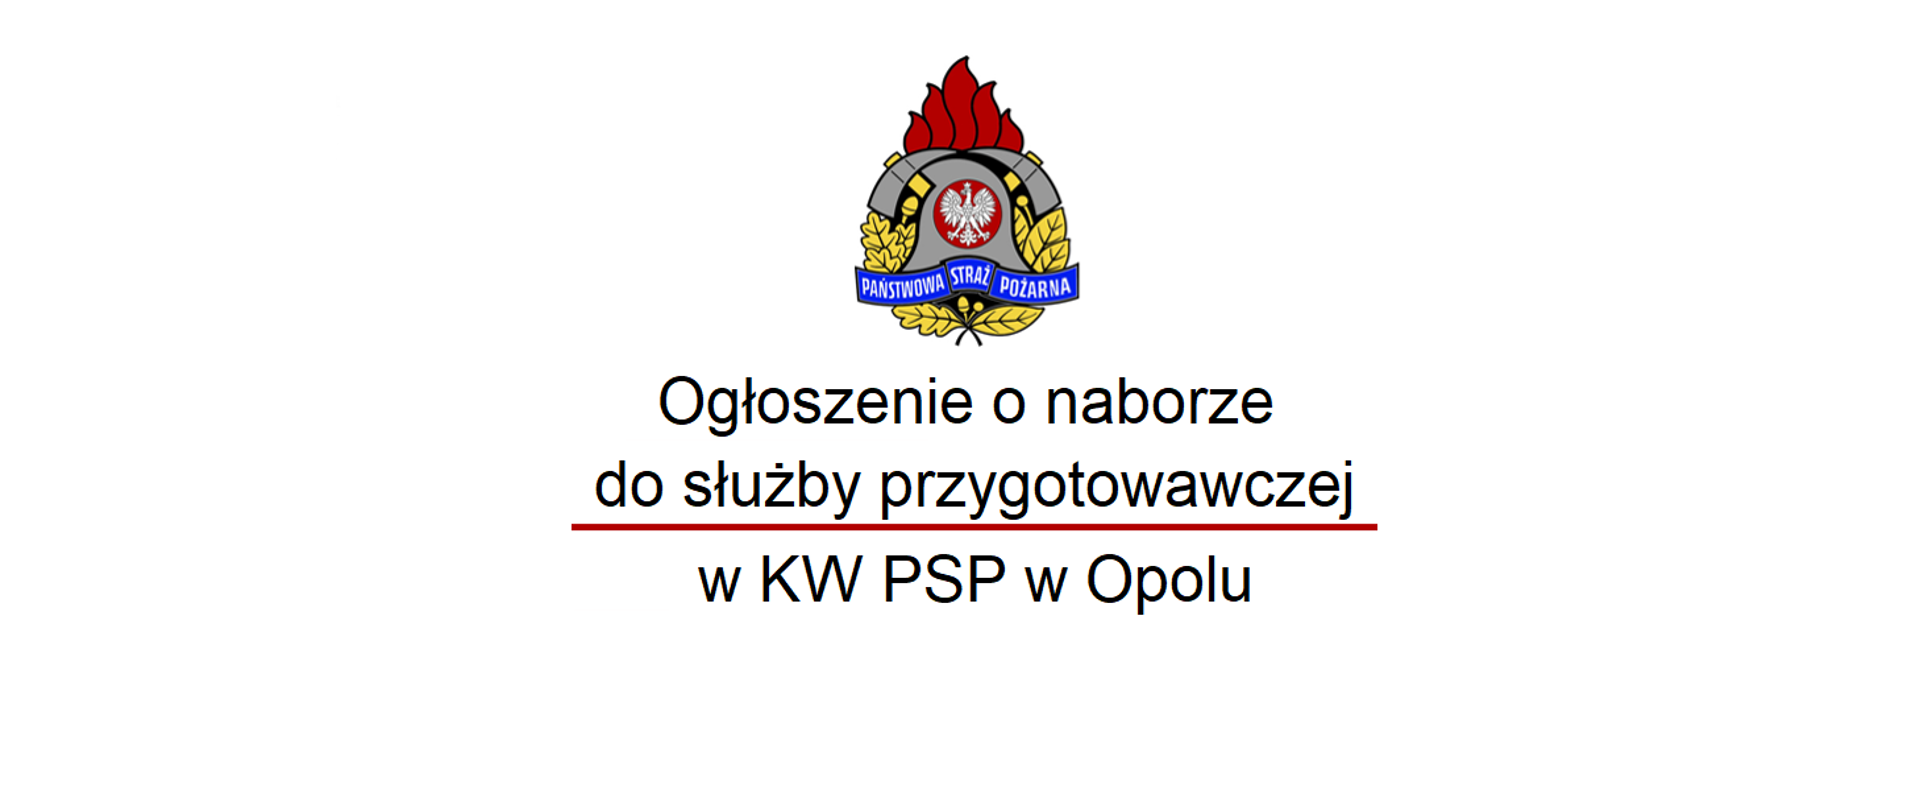 Ogłoszenie o naborze do służby przygotowawczej w KW PSP w Opolu.